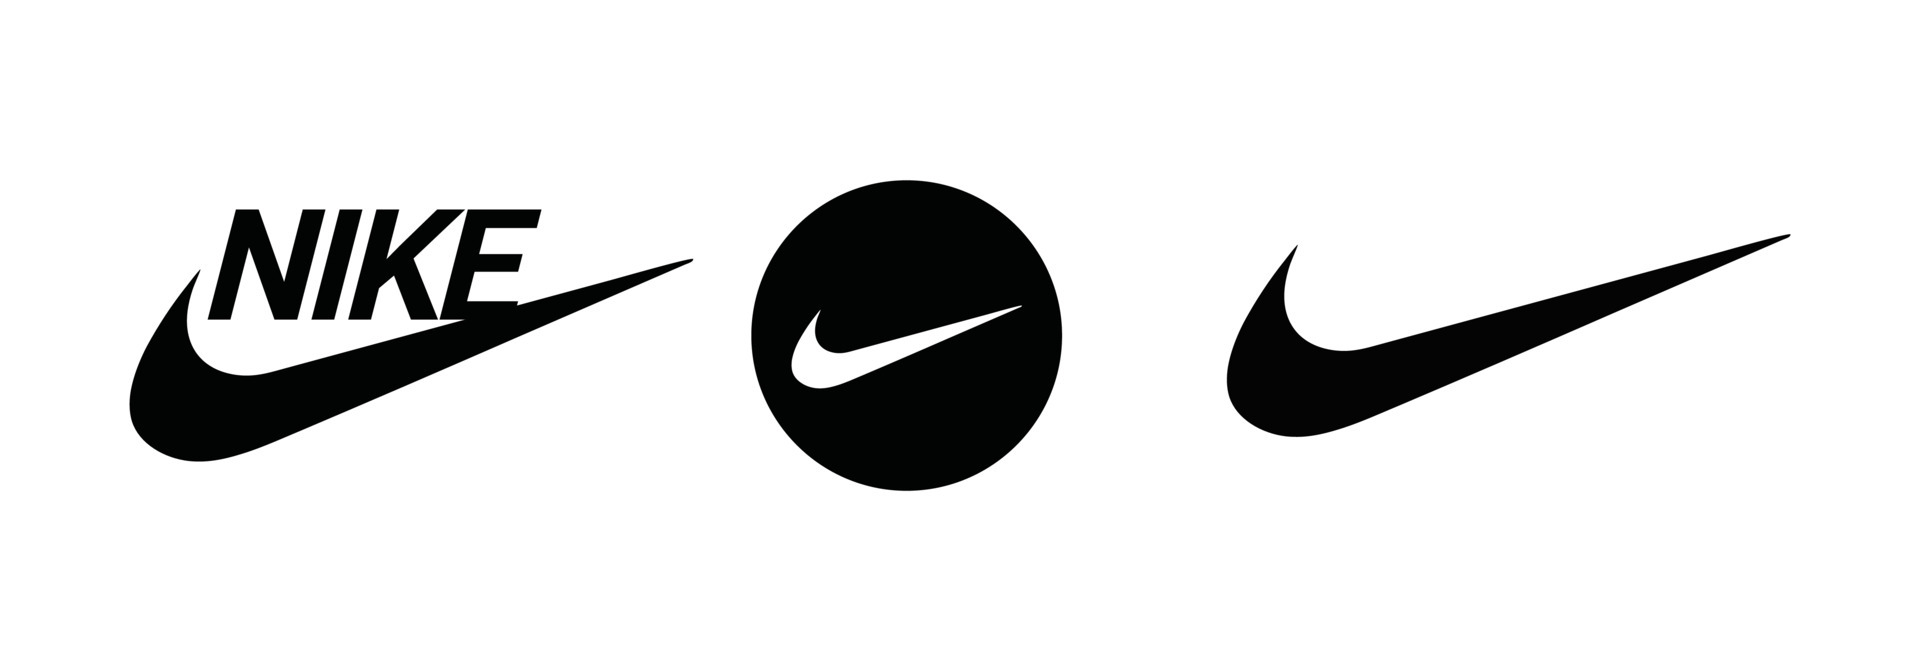 Nike logo vector on white background 6419198 Vector Art at Vecteezy